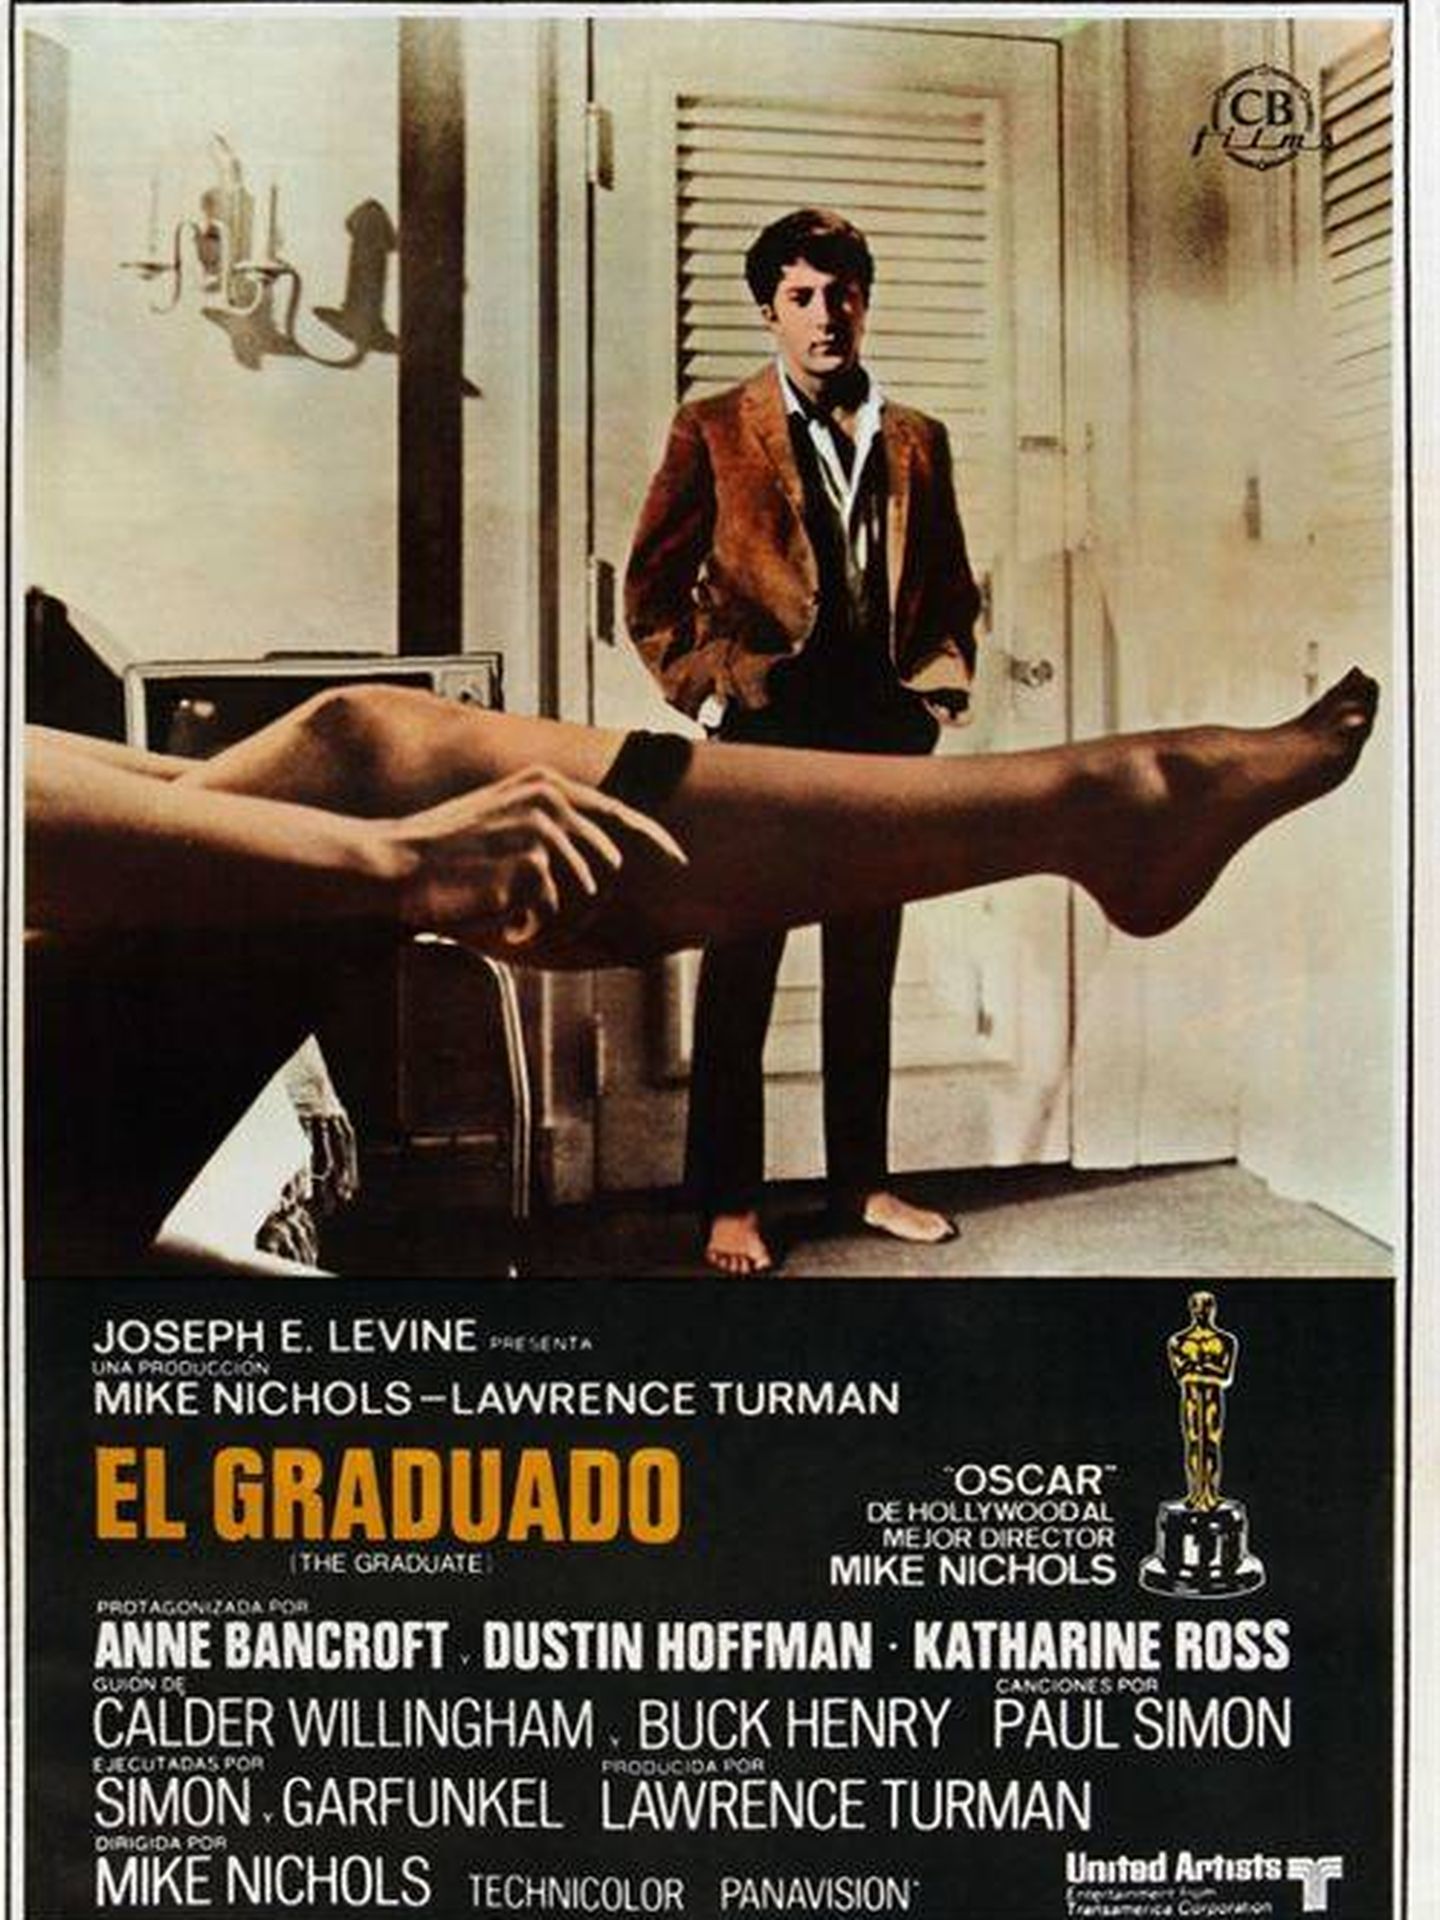 La pierna de Linda en el cartel de la película 'El graduado'.